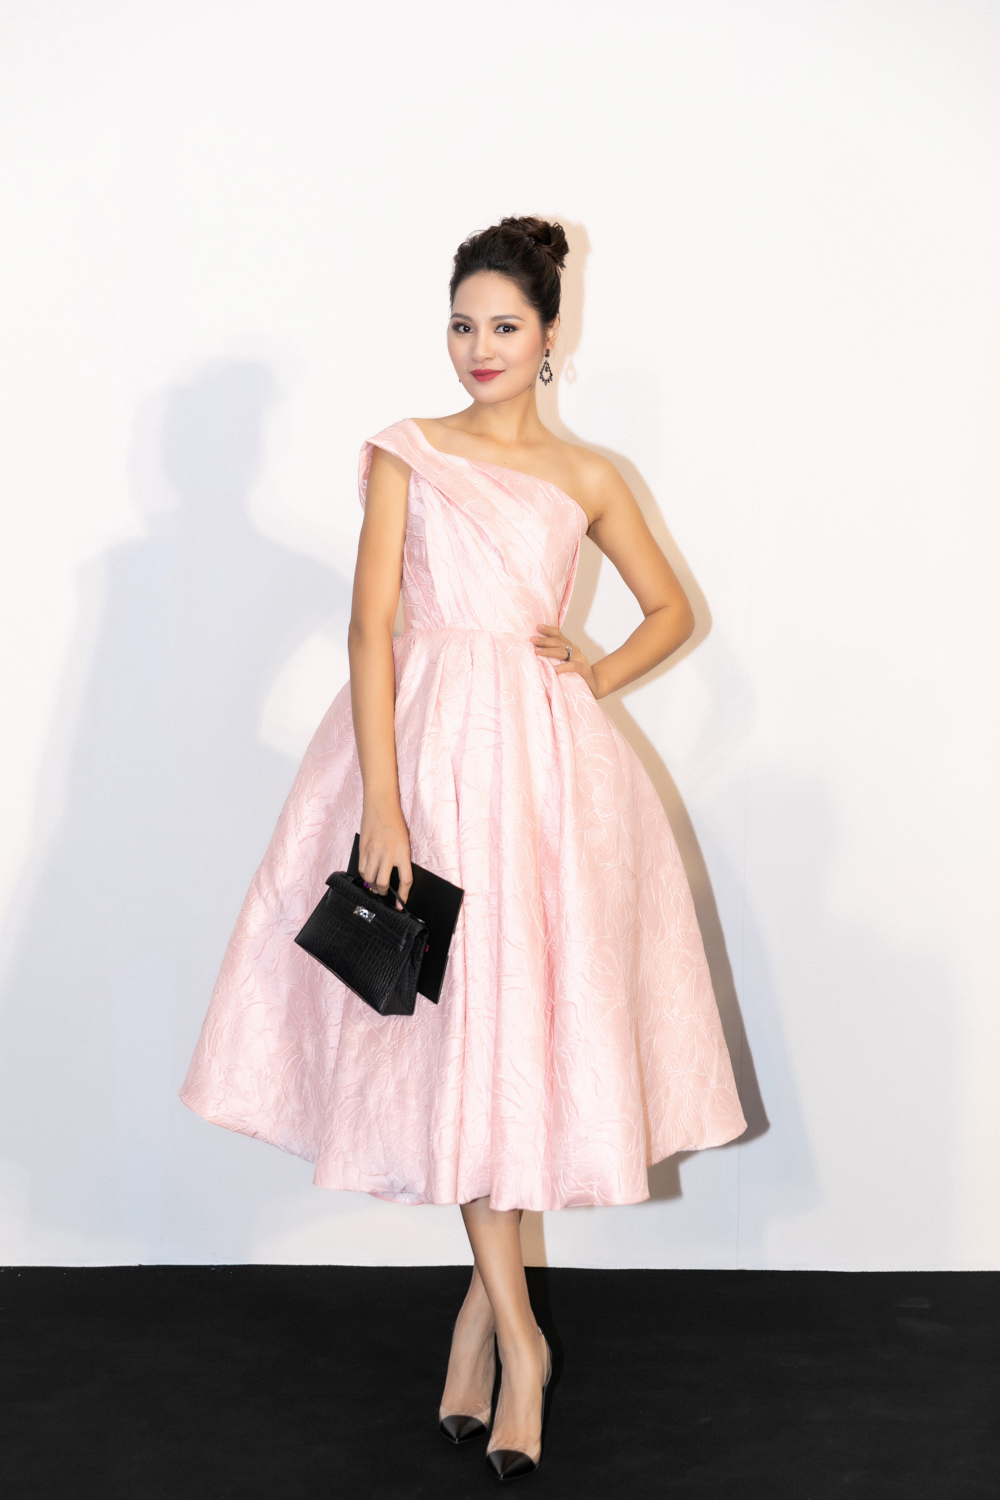 Hoa hậu Hương Giang chọn sắc hồng pastel xuất hiện tại show "Mix & Match". Chiếc váy xoè nữ tính được Hương Giang phối cùng túi Hermès màu đen.